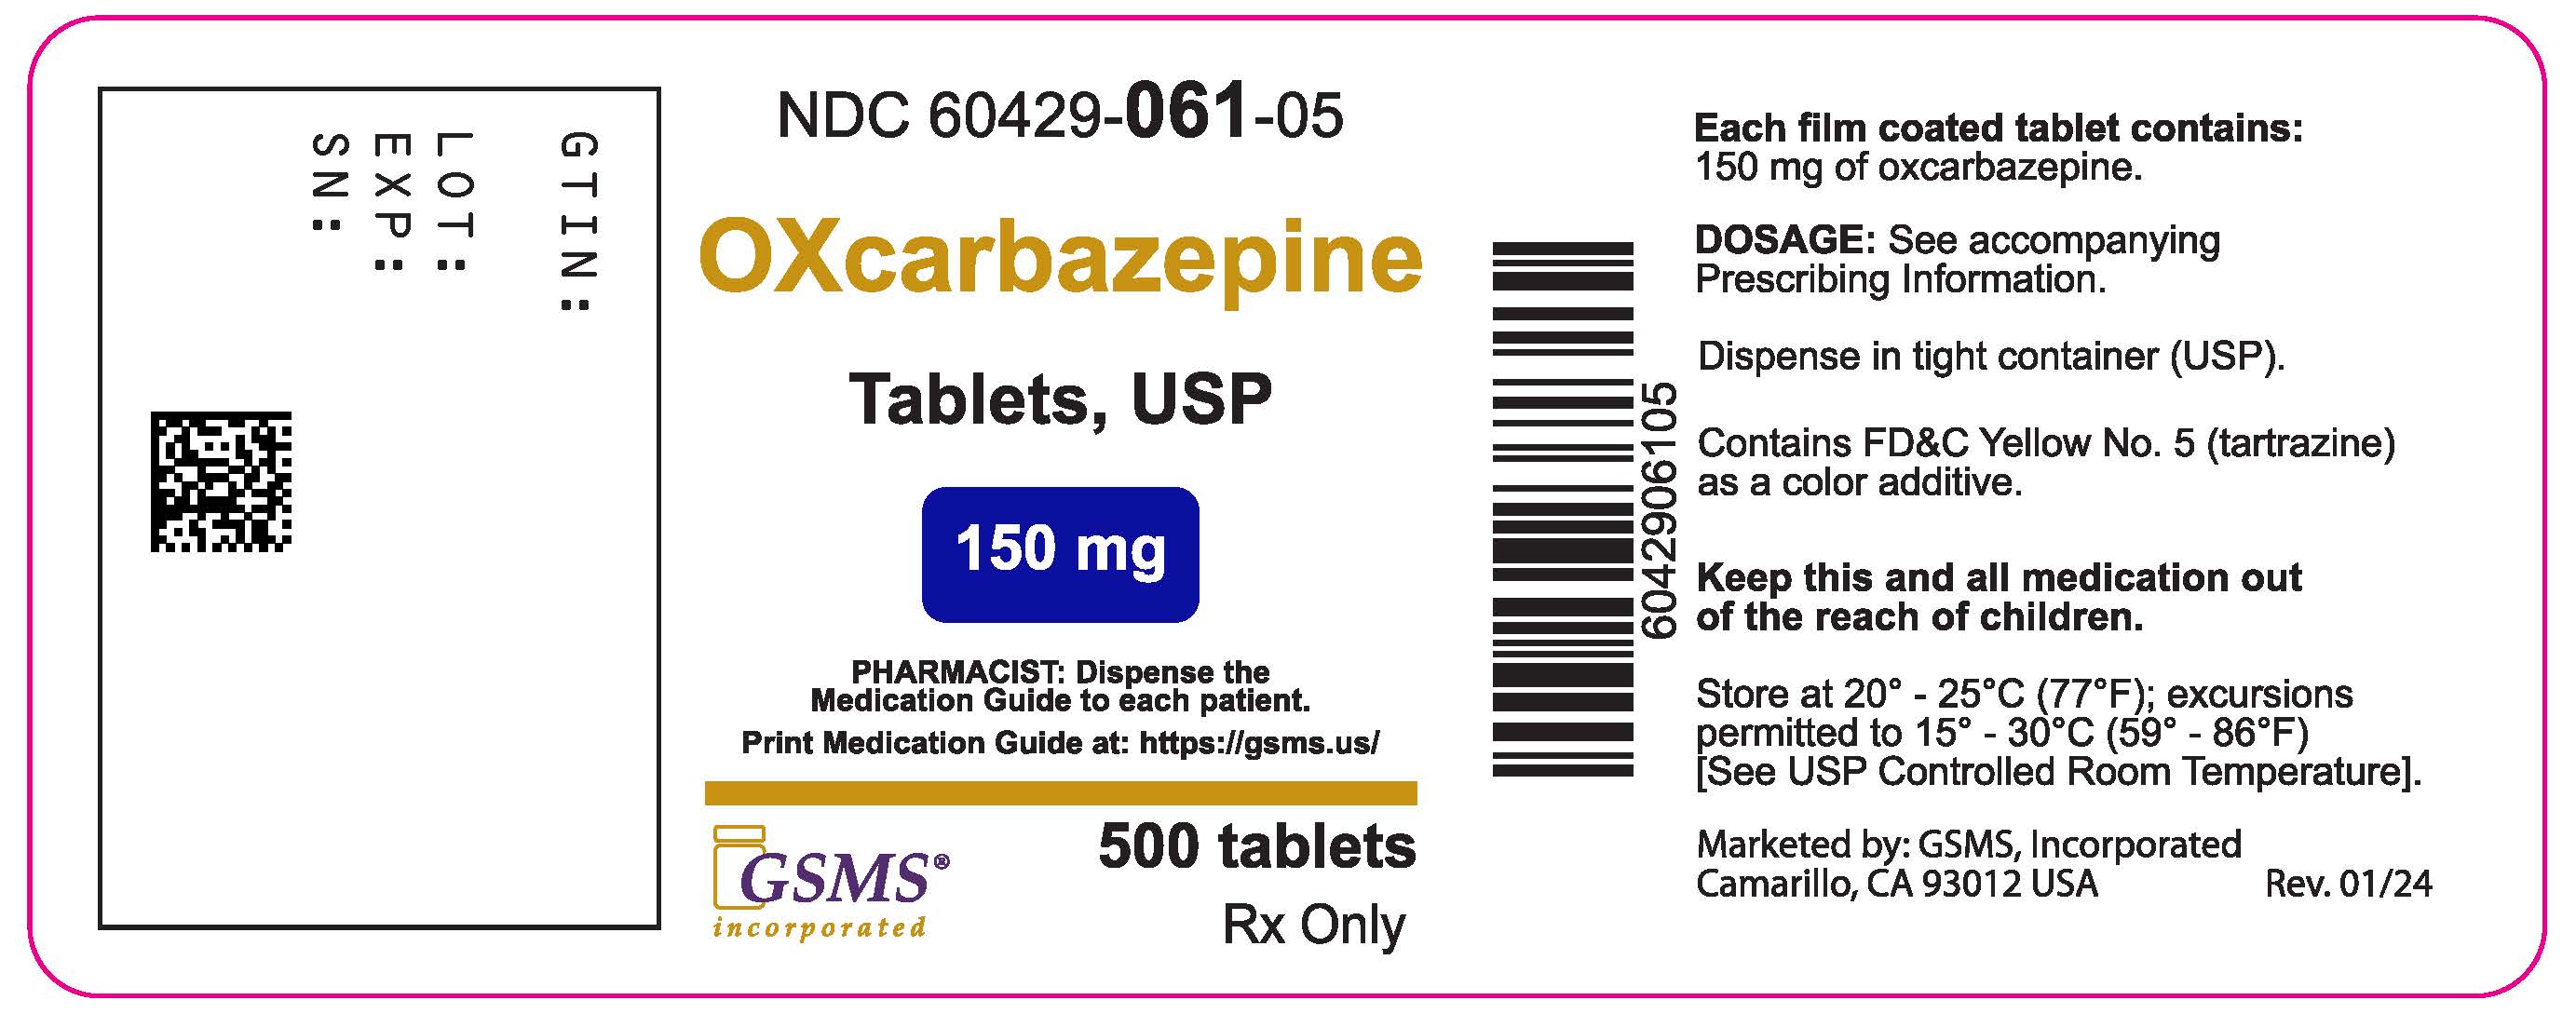 60429-061-05LB- Oxcarbazepine 150 gm - Rev. 0124.jpg